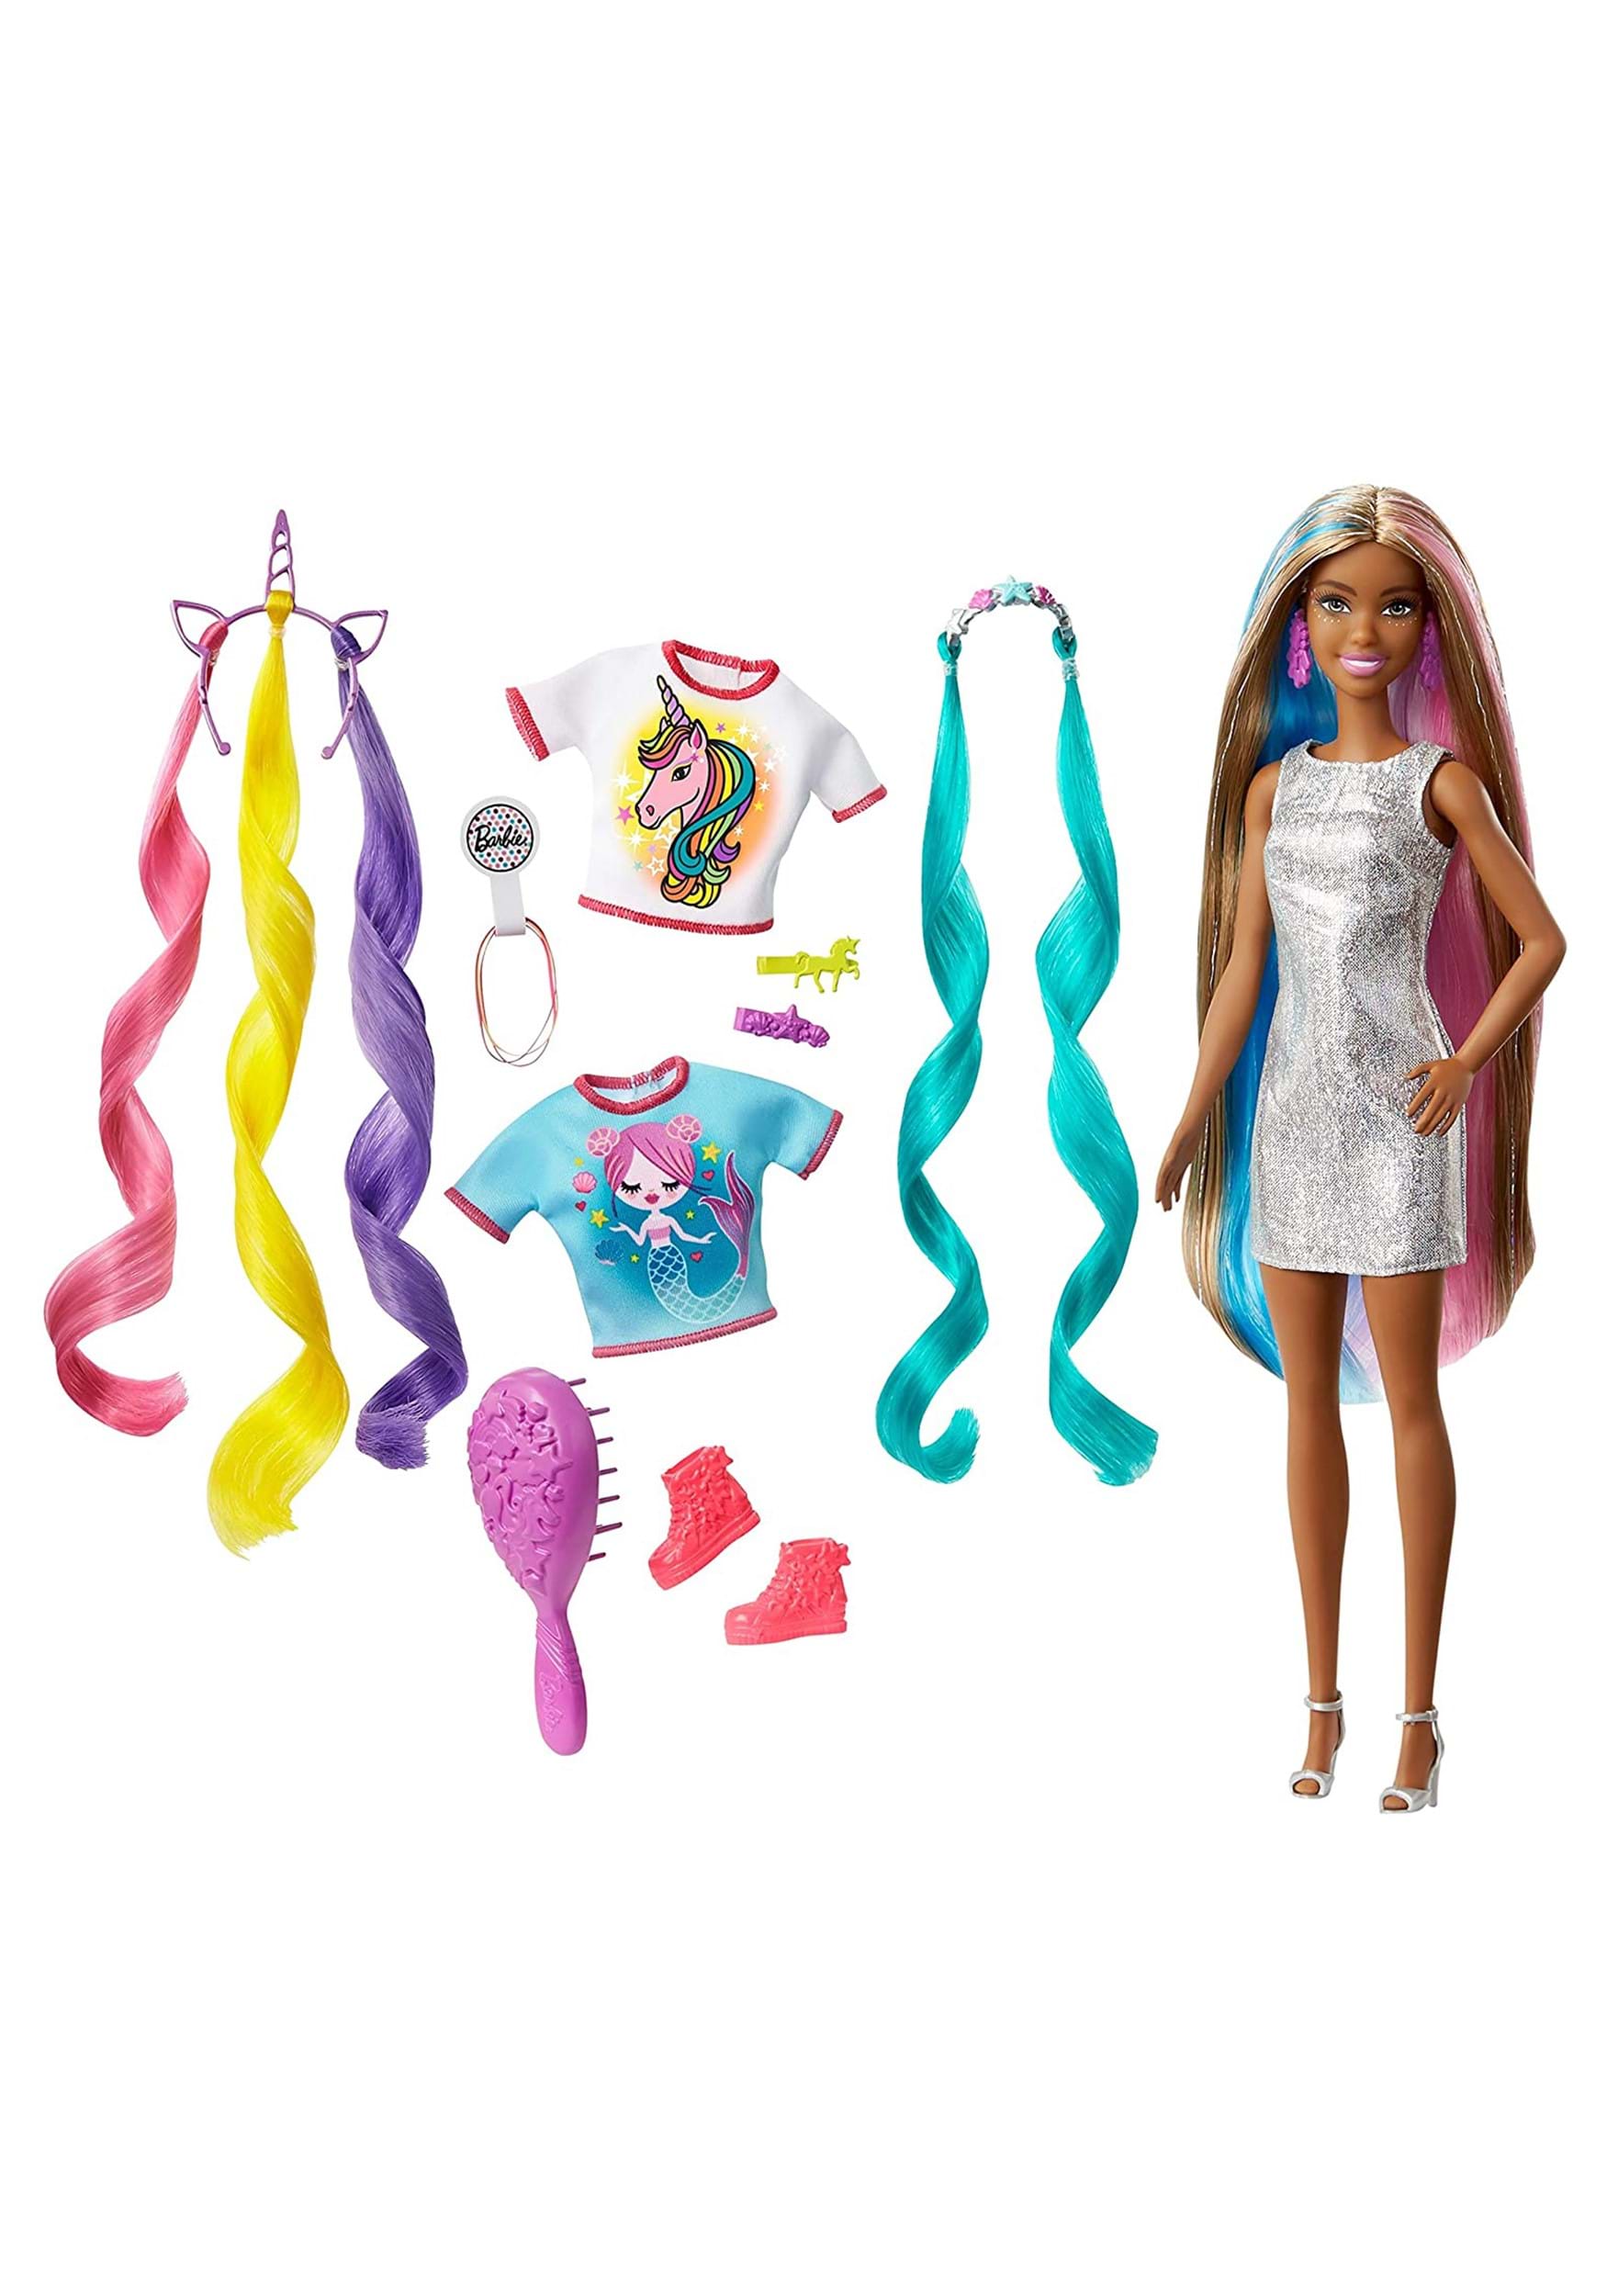 Fantasy Hair Brunette Barbie Doll